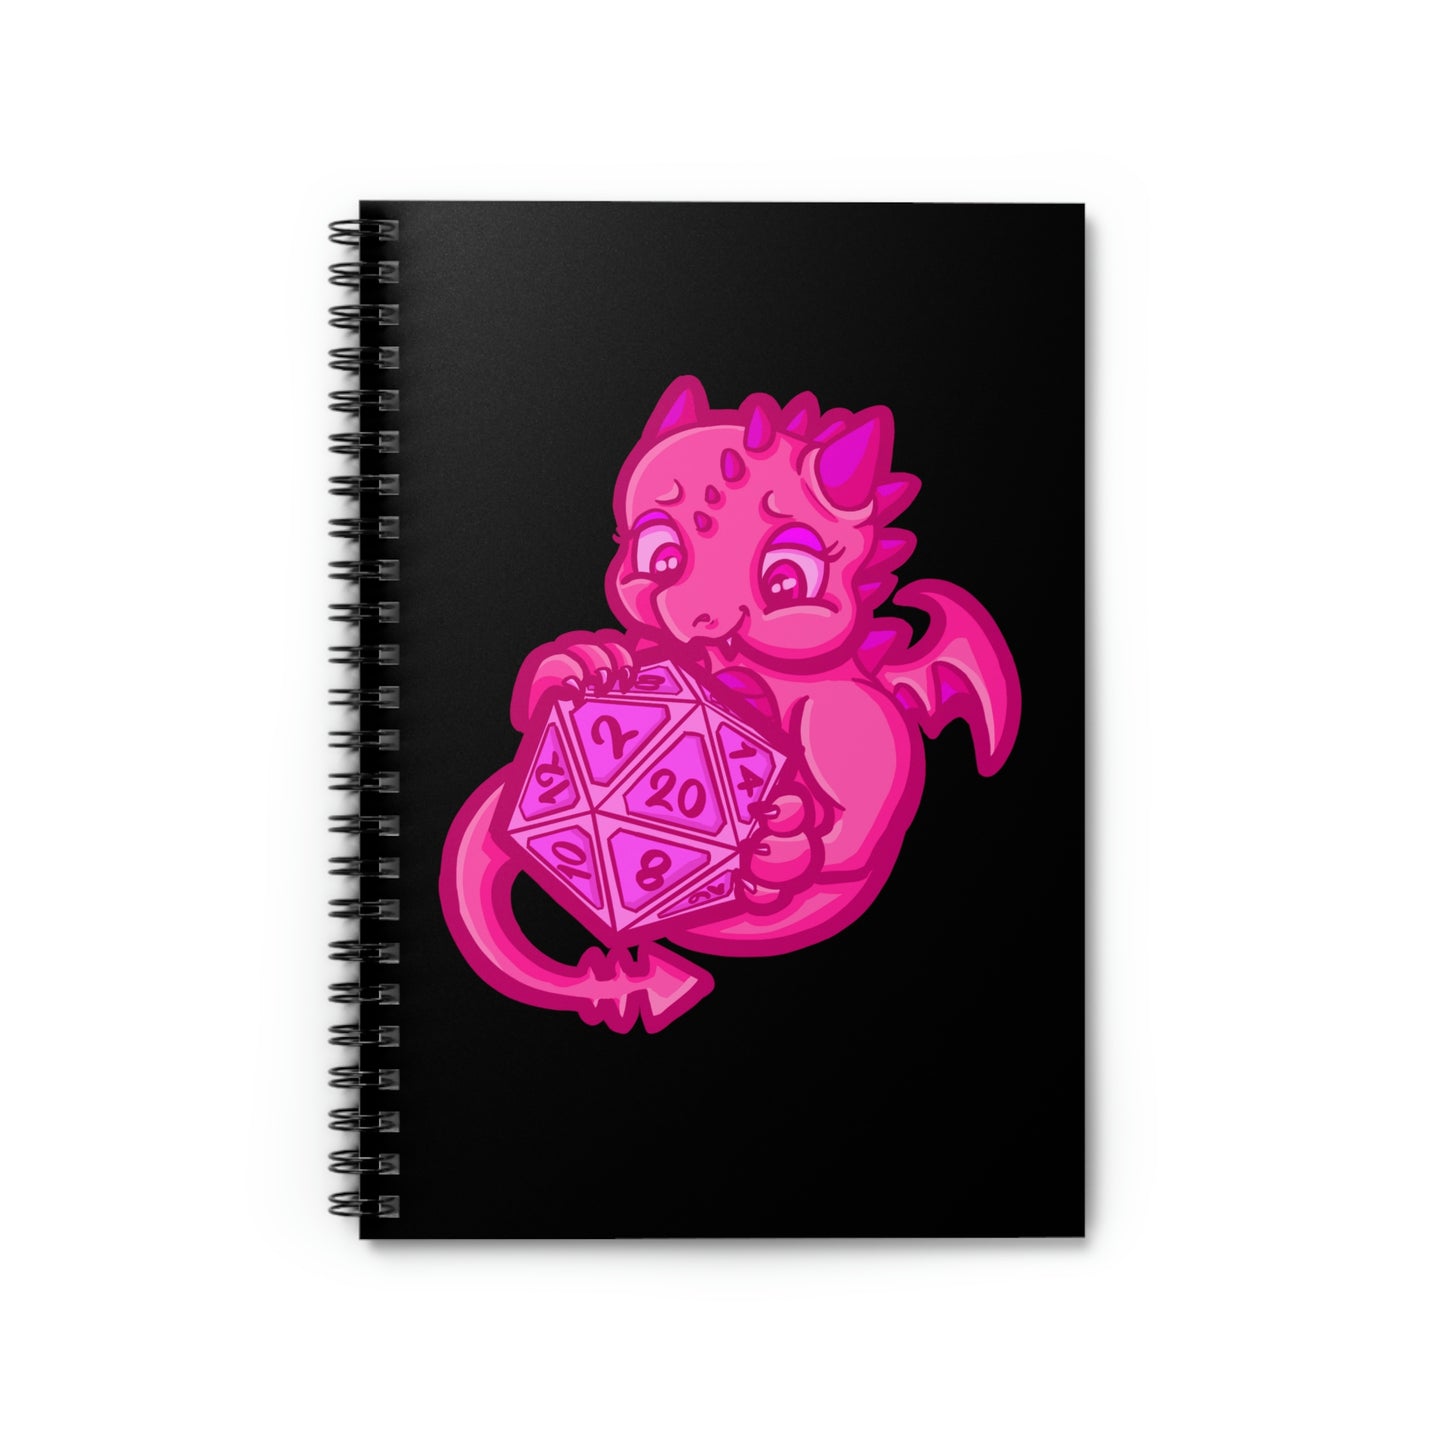 Kait Merryman, D20 Dragon DND Spiral Notebook - Ruled Line